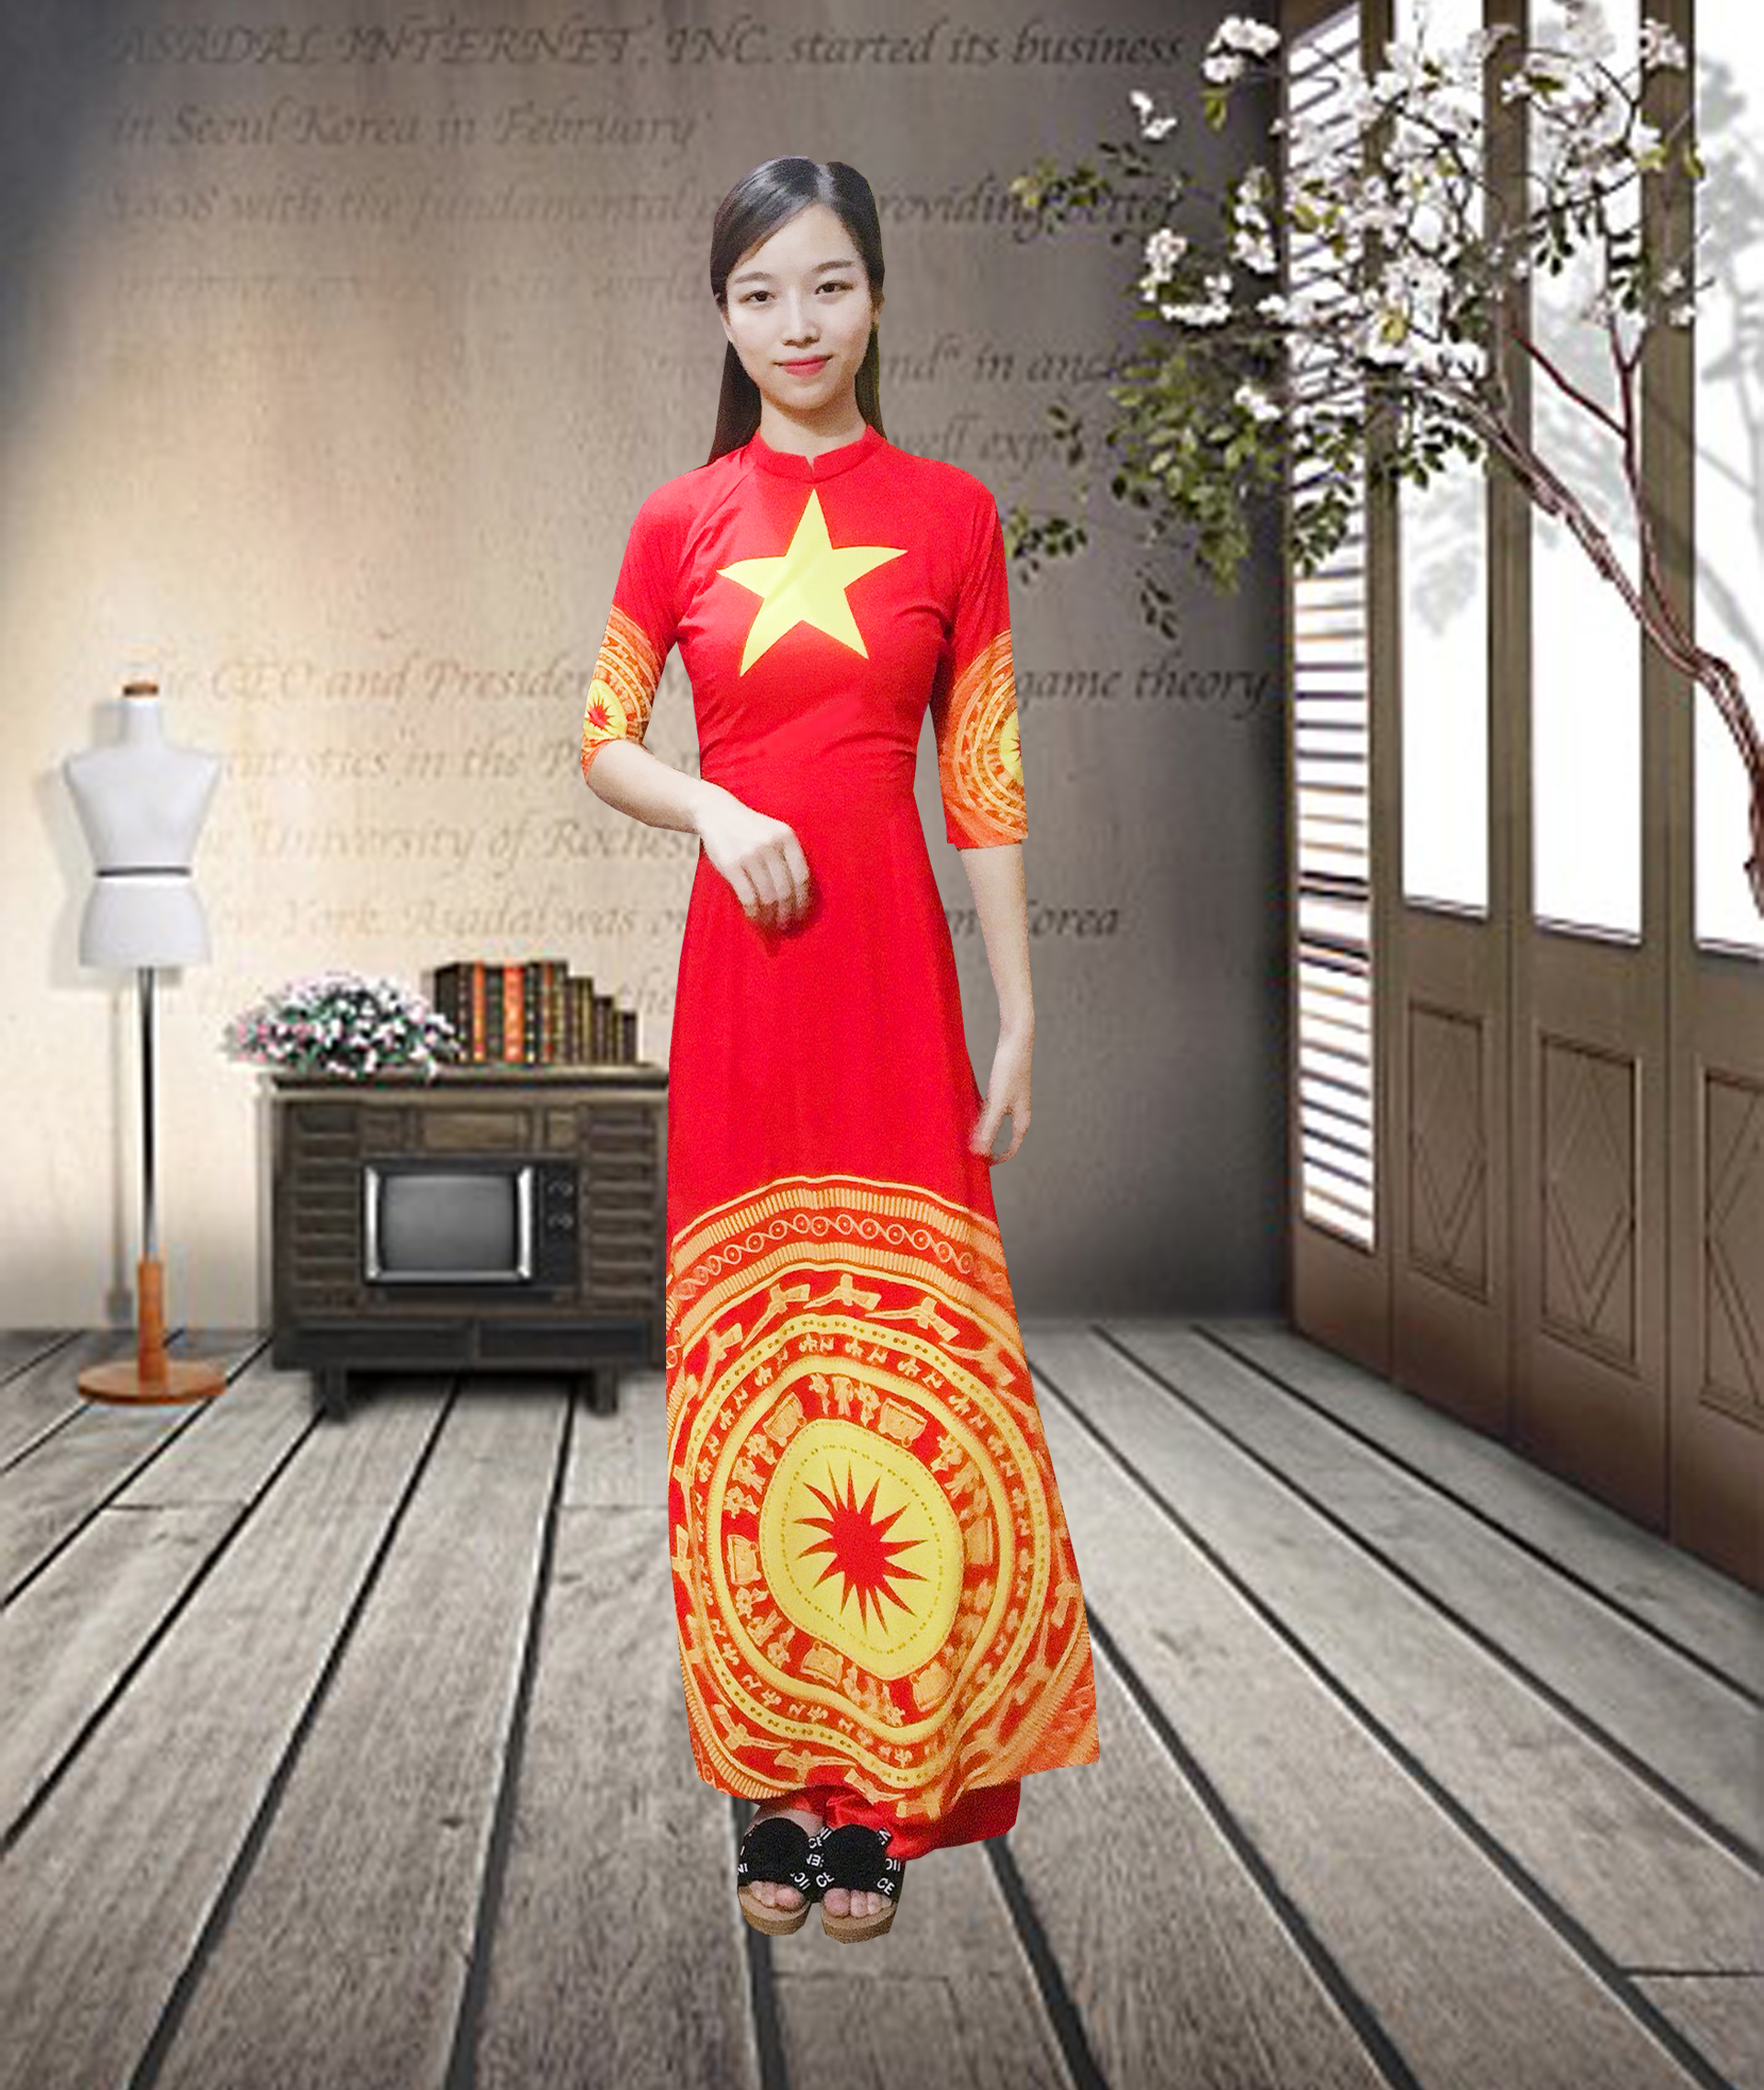 Áo dài truyền thống cờ đỏ sao vàng: Áo dài truyền thống cờ đỏ sao vàng là biểu tượng đặc trưng của văn hóa Việt Nam. Trong năm 2024 này, áo dài còn được phát triển và cải tiến để phù hợp hơn với sự đa dạng trong văn hóa và thời trang. Hãy xem ảnh và cùng nhìn nhận vẻ đẹp của áo dài truyền thống cờ đỏ sao vàng.